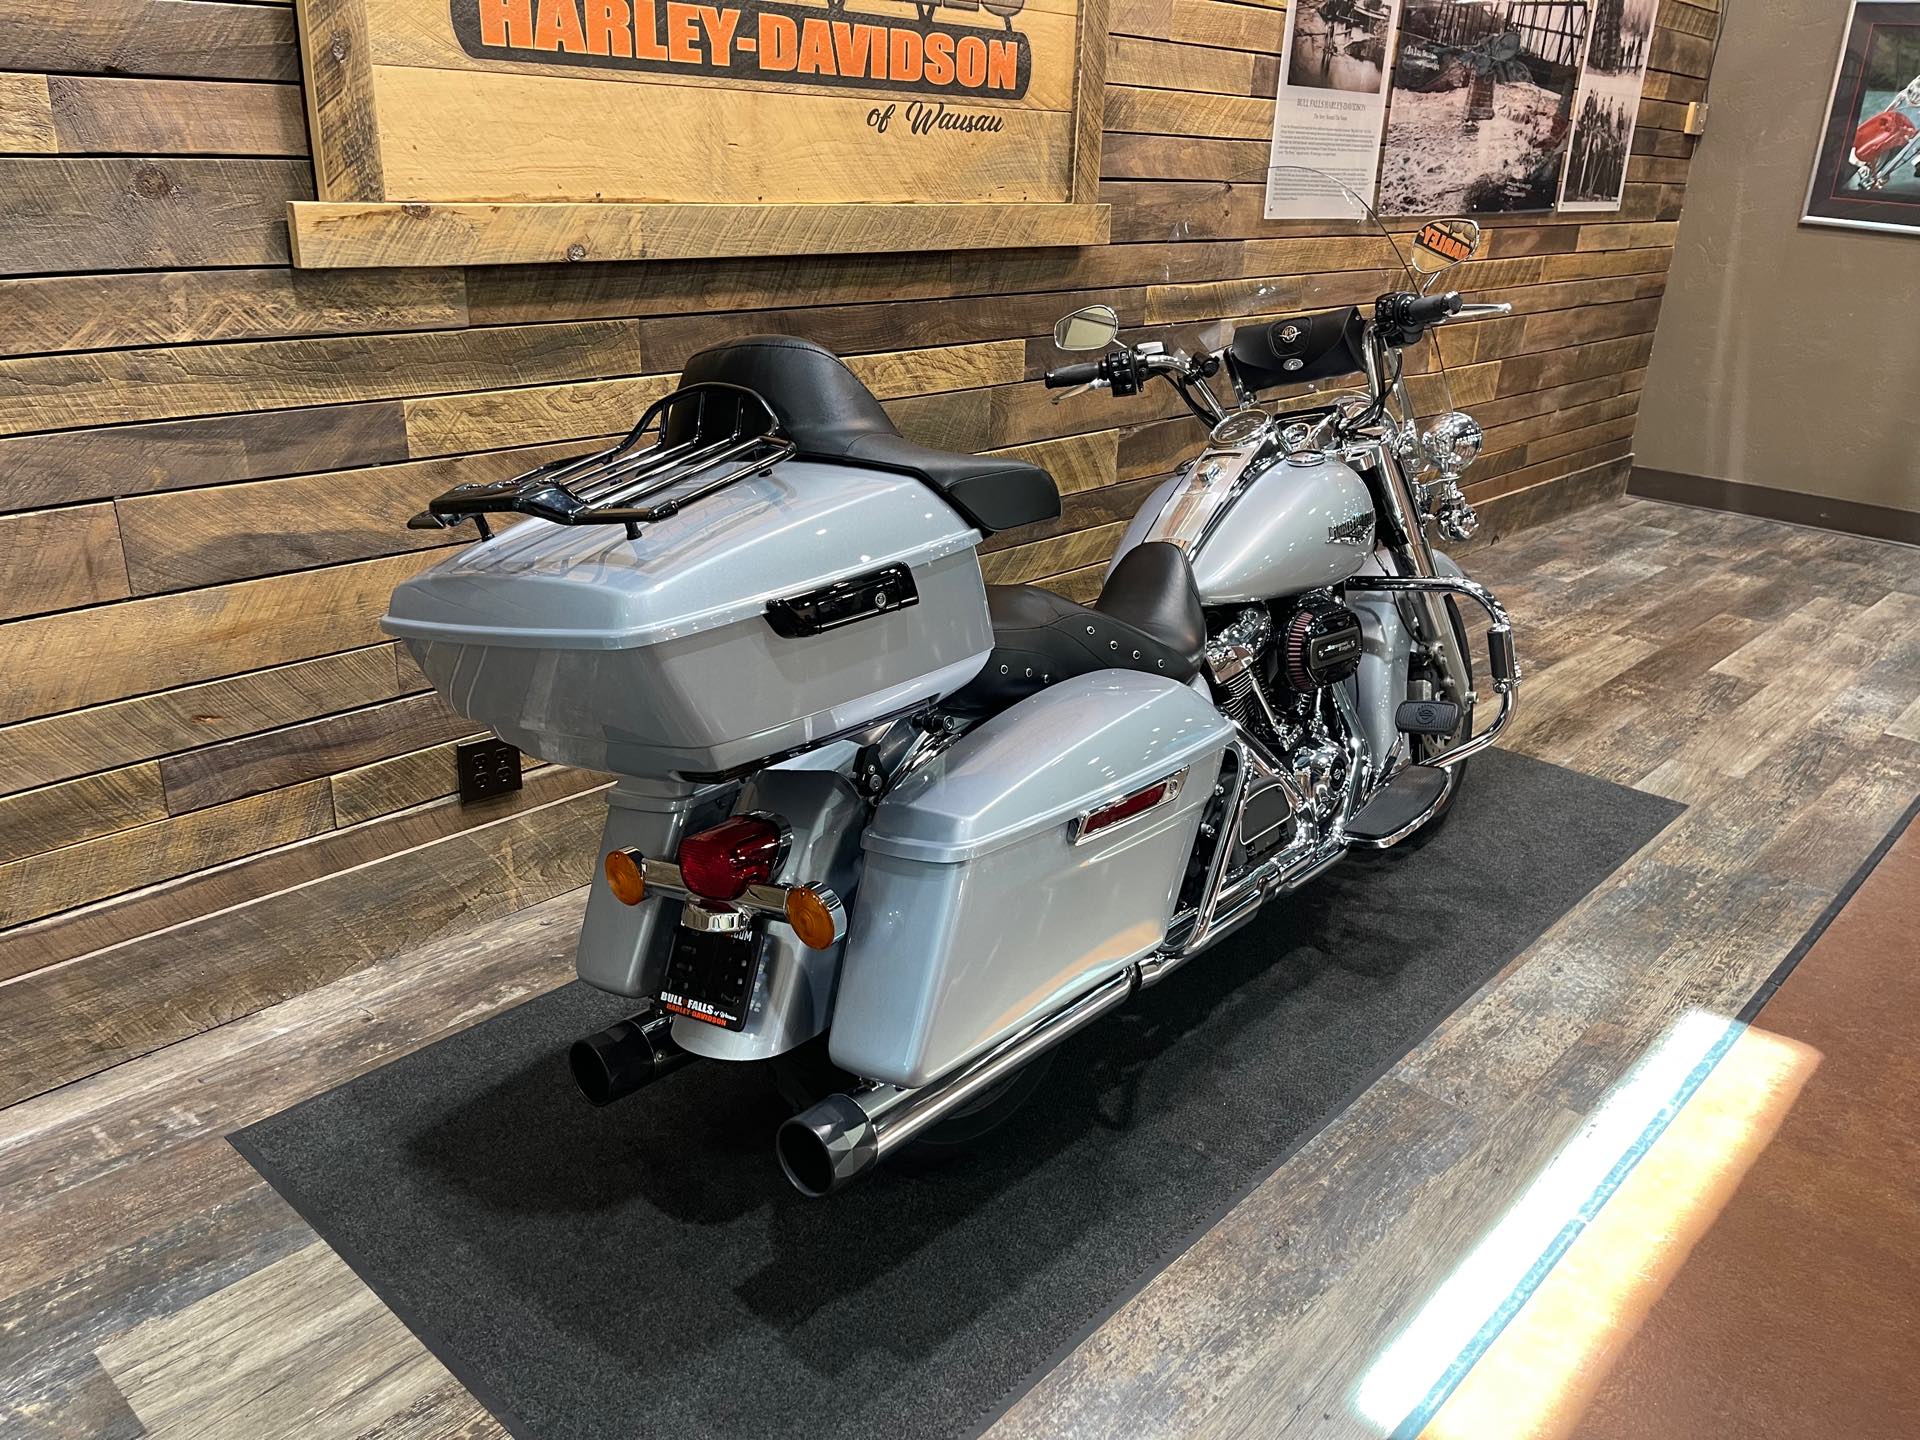 2019 Harley-Davidson Road King Base at Bull Falls Harley-Davidson